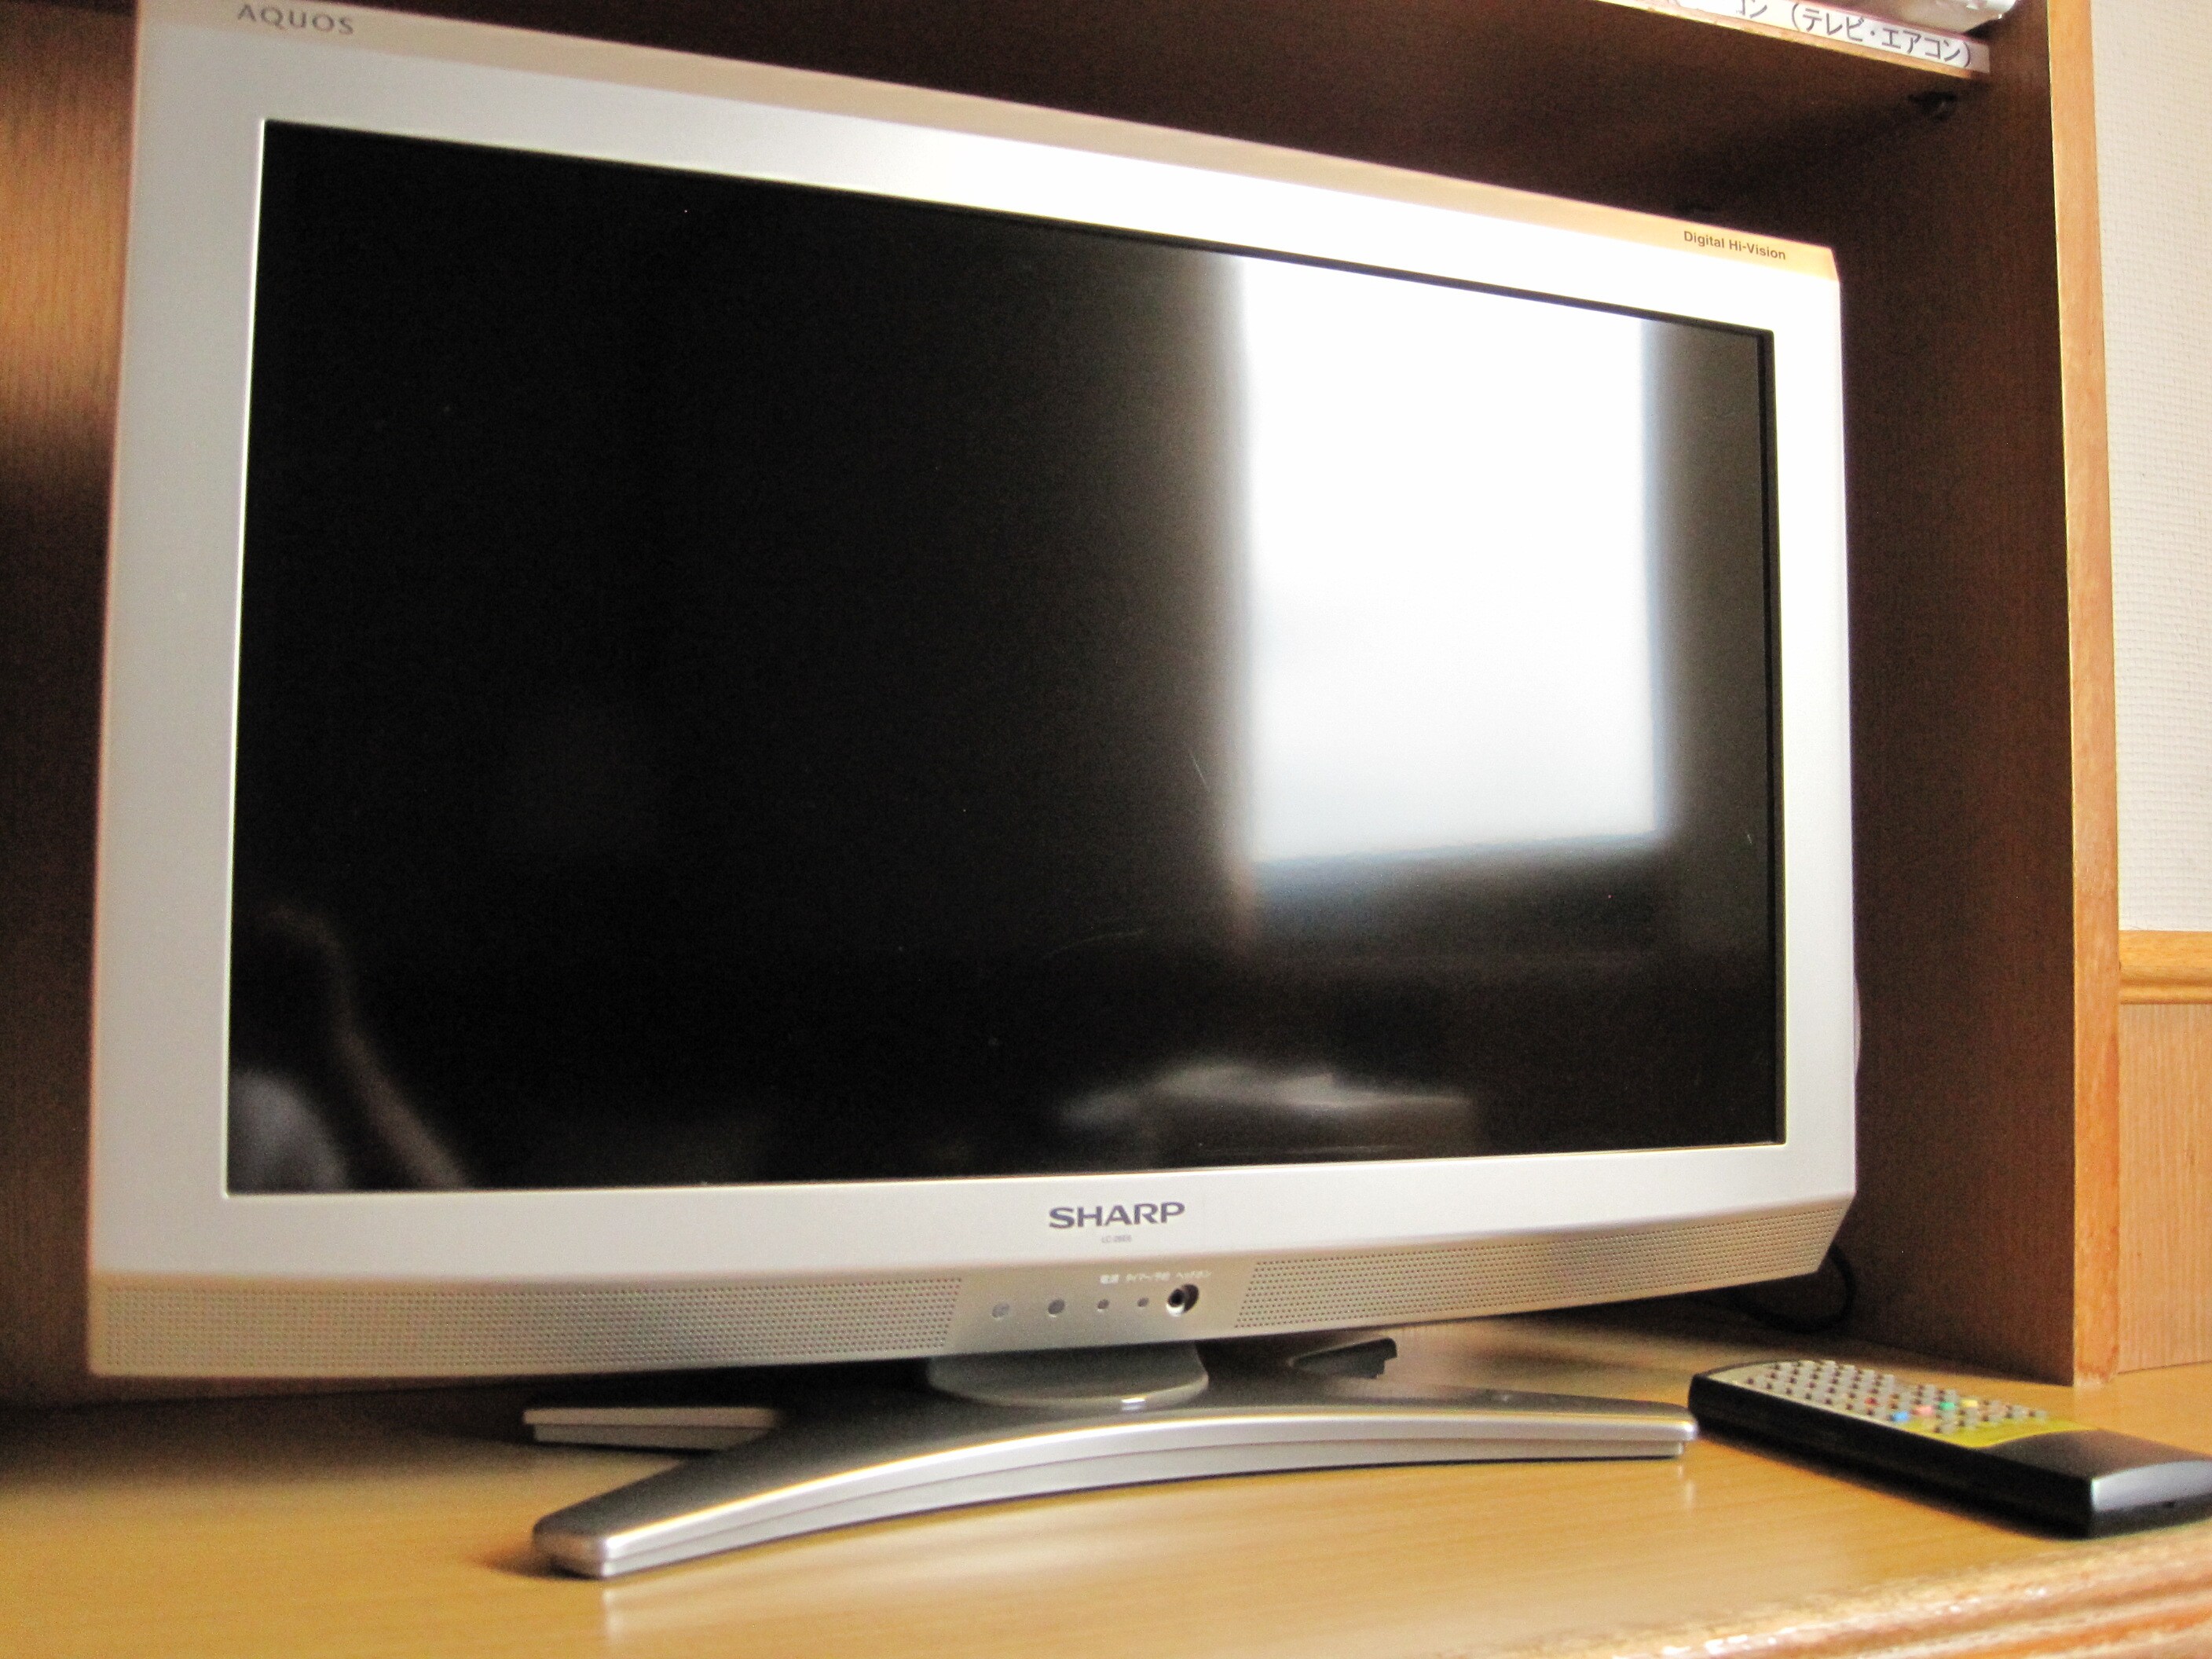 26-inch LCD TV